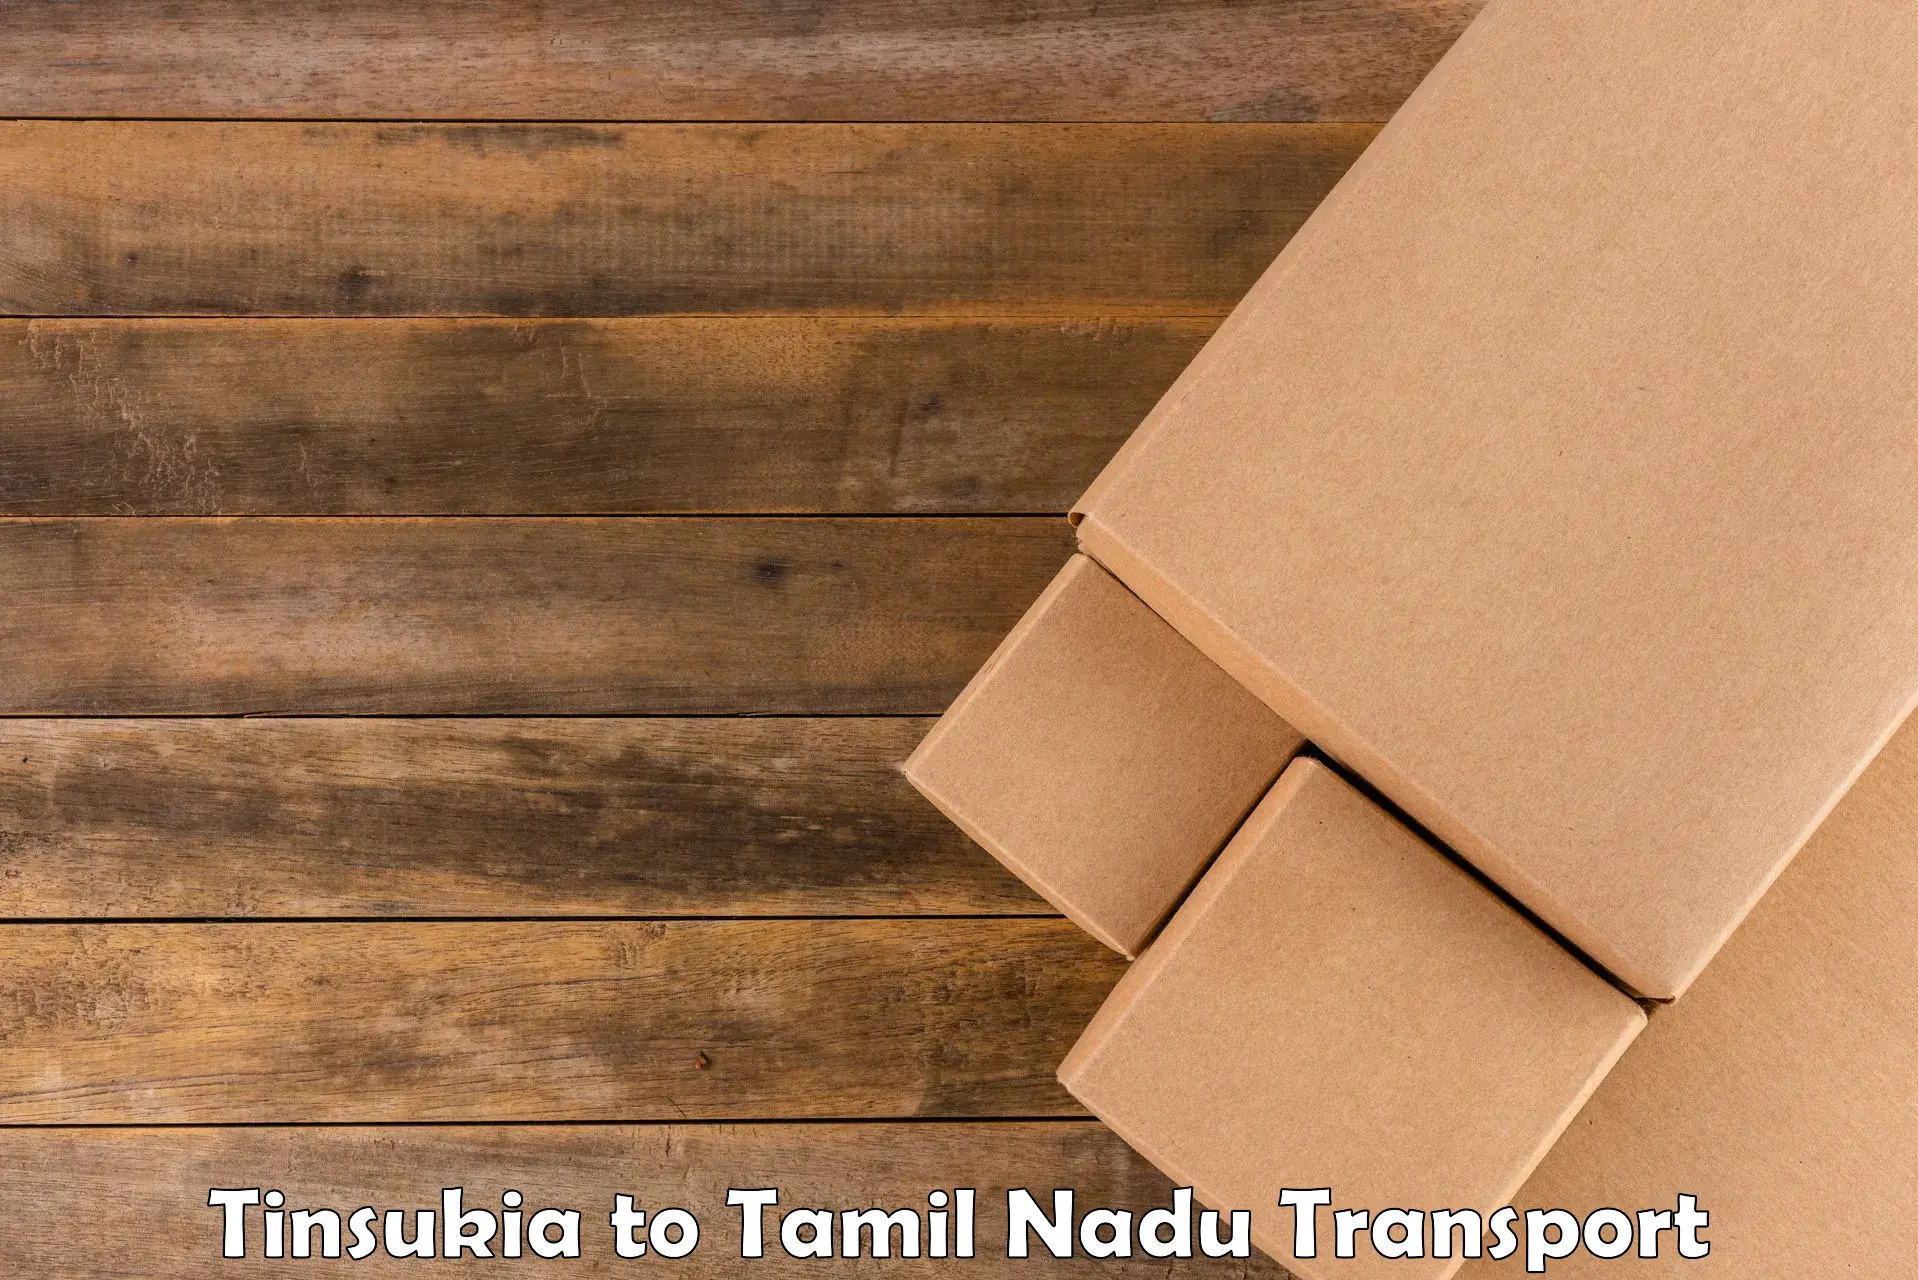 Daily parcel service transport Tinsukia to Papanasam